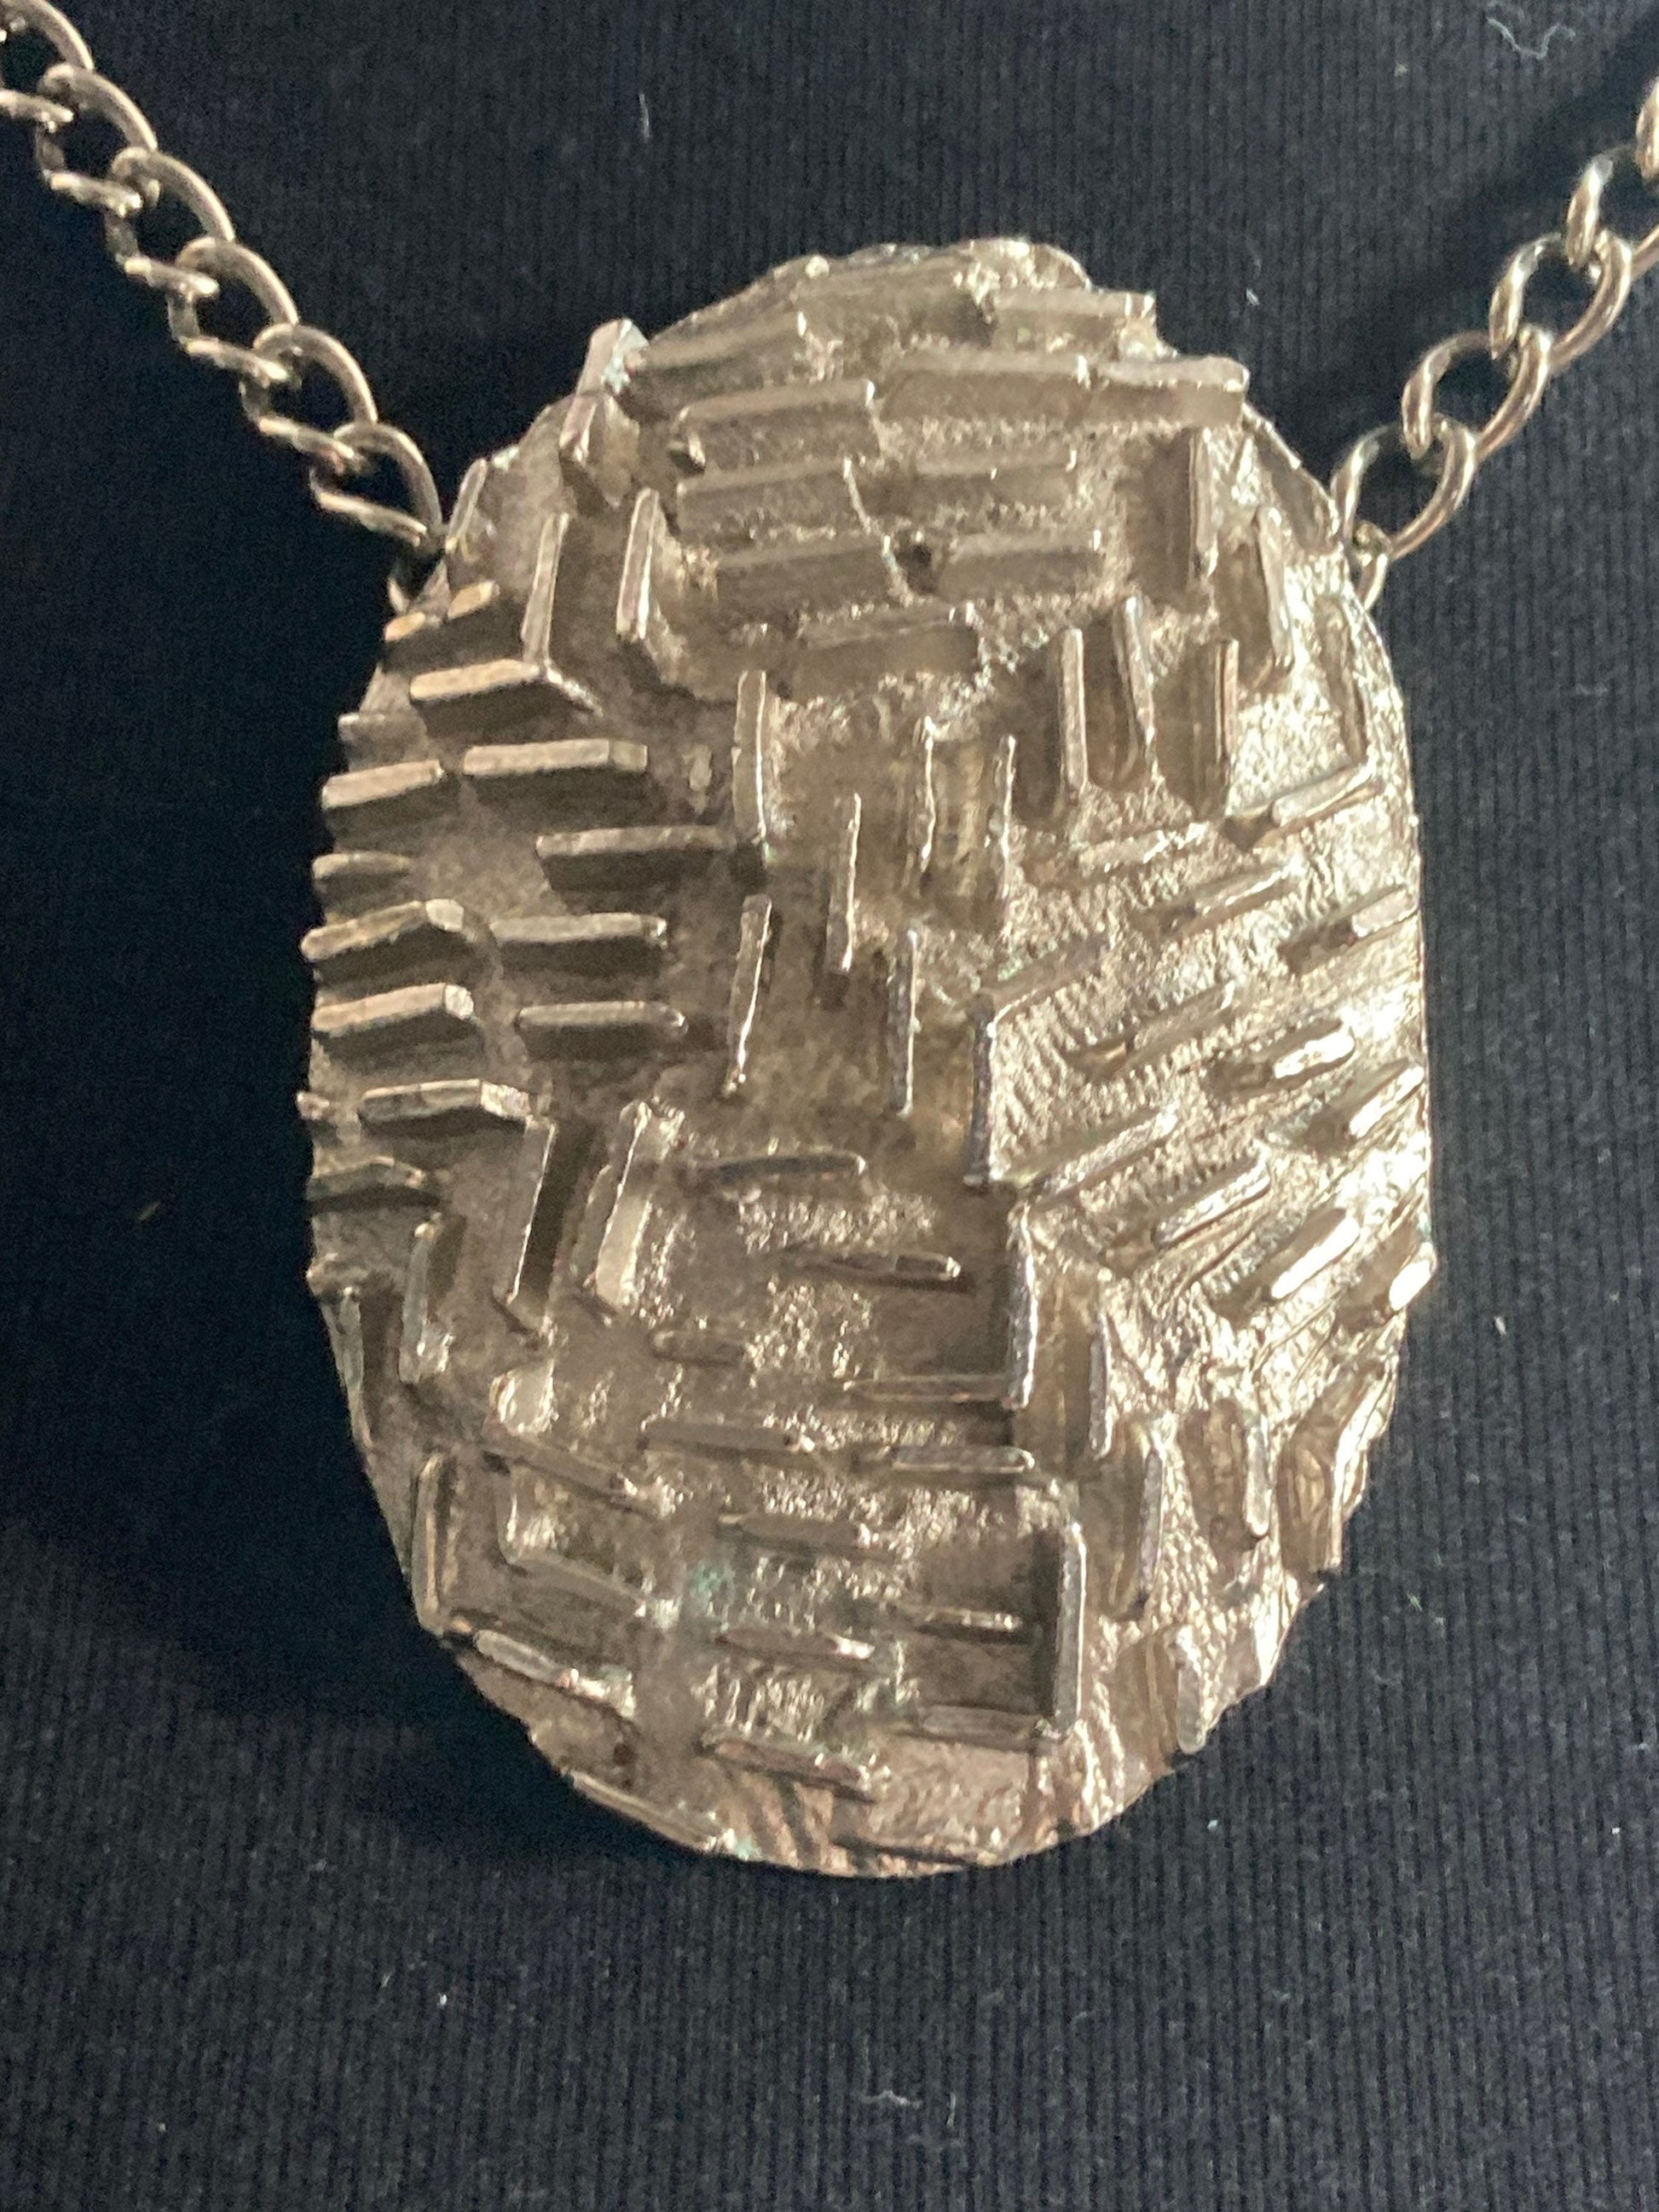 Vintage Modernist brutalist oval textured pendant drop or choker necklace